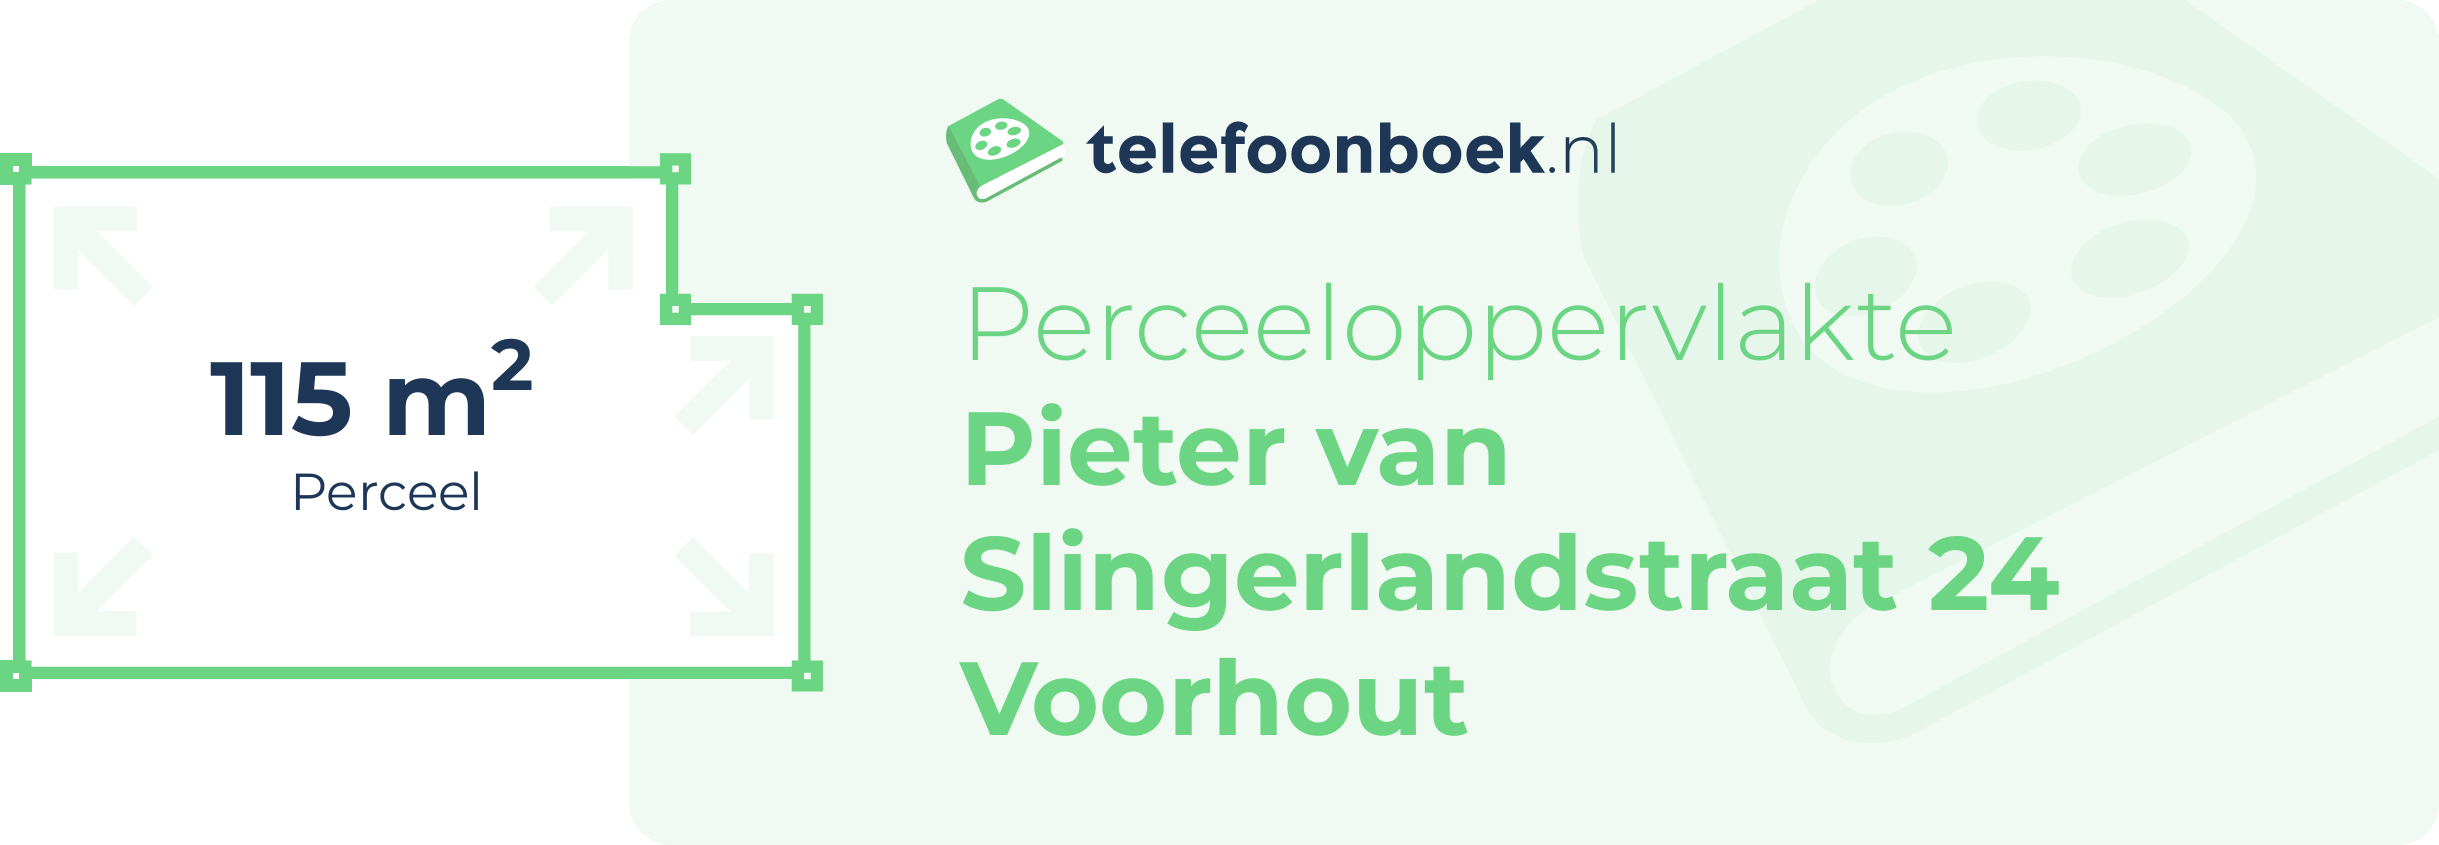 Perceeloppervlakte Pieter Van Slingerlandstraat 24 Voorhout